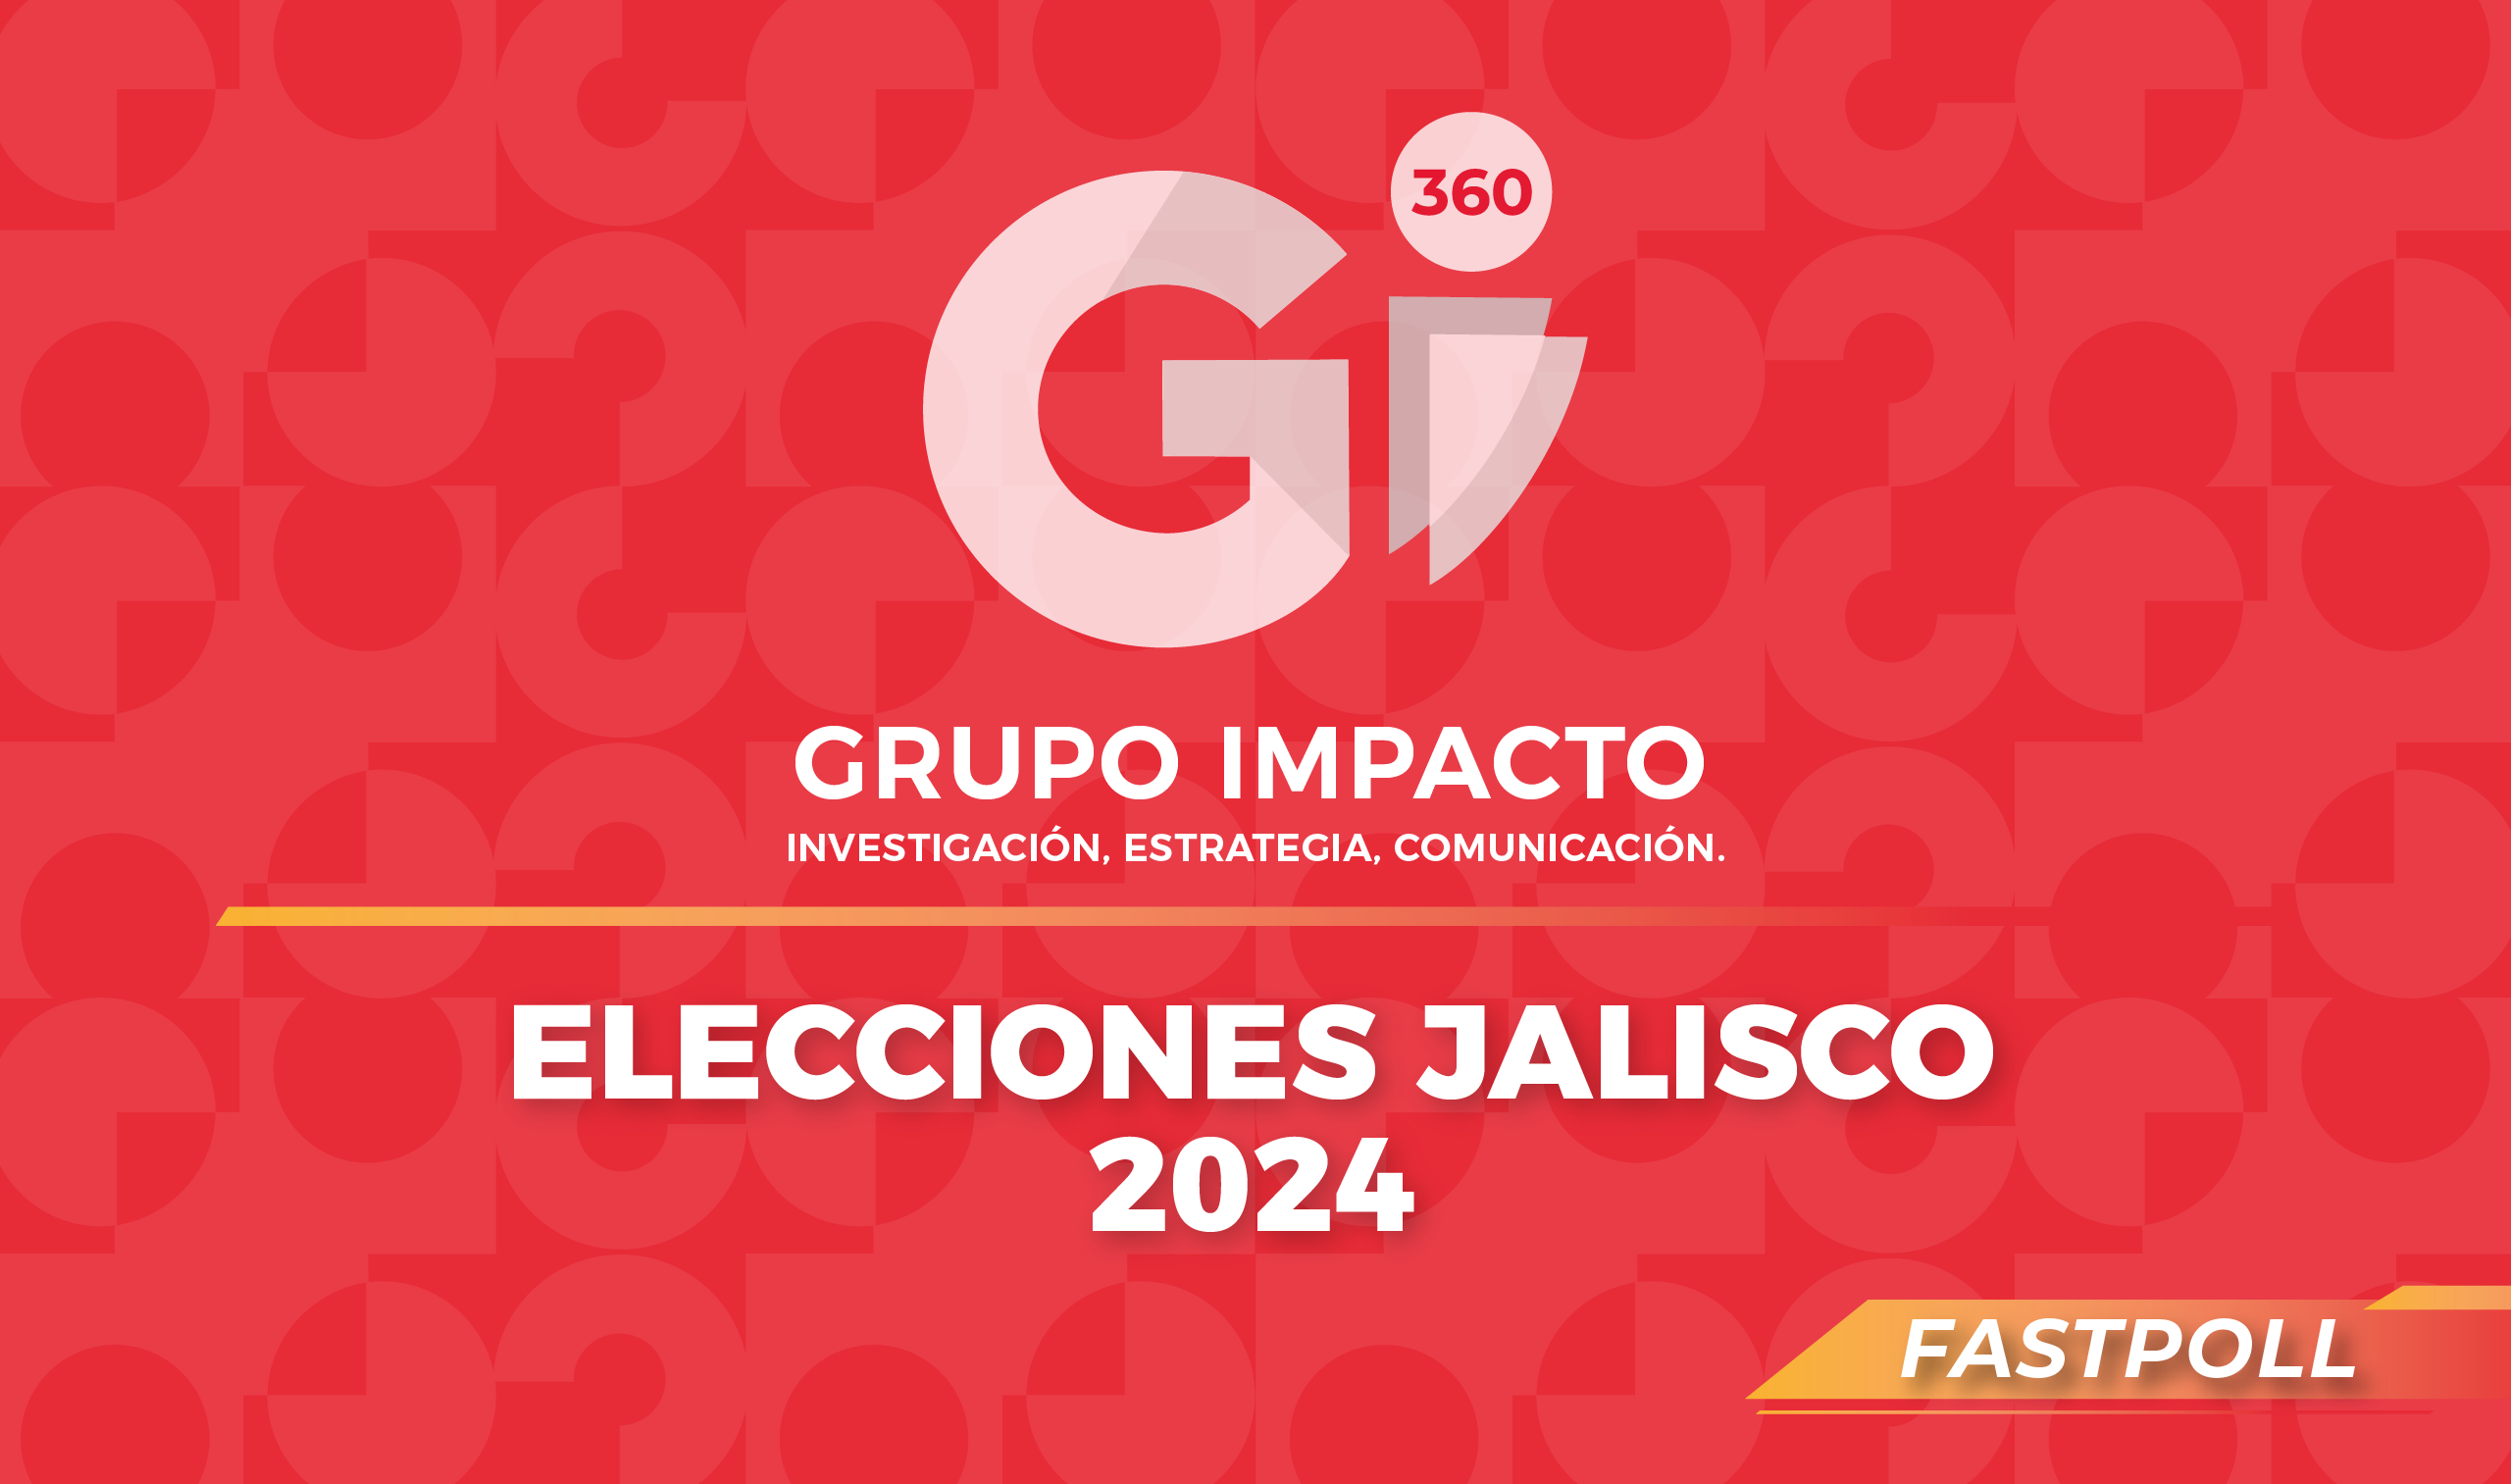 ELECCIONES JALISCO 2024 Gii360